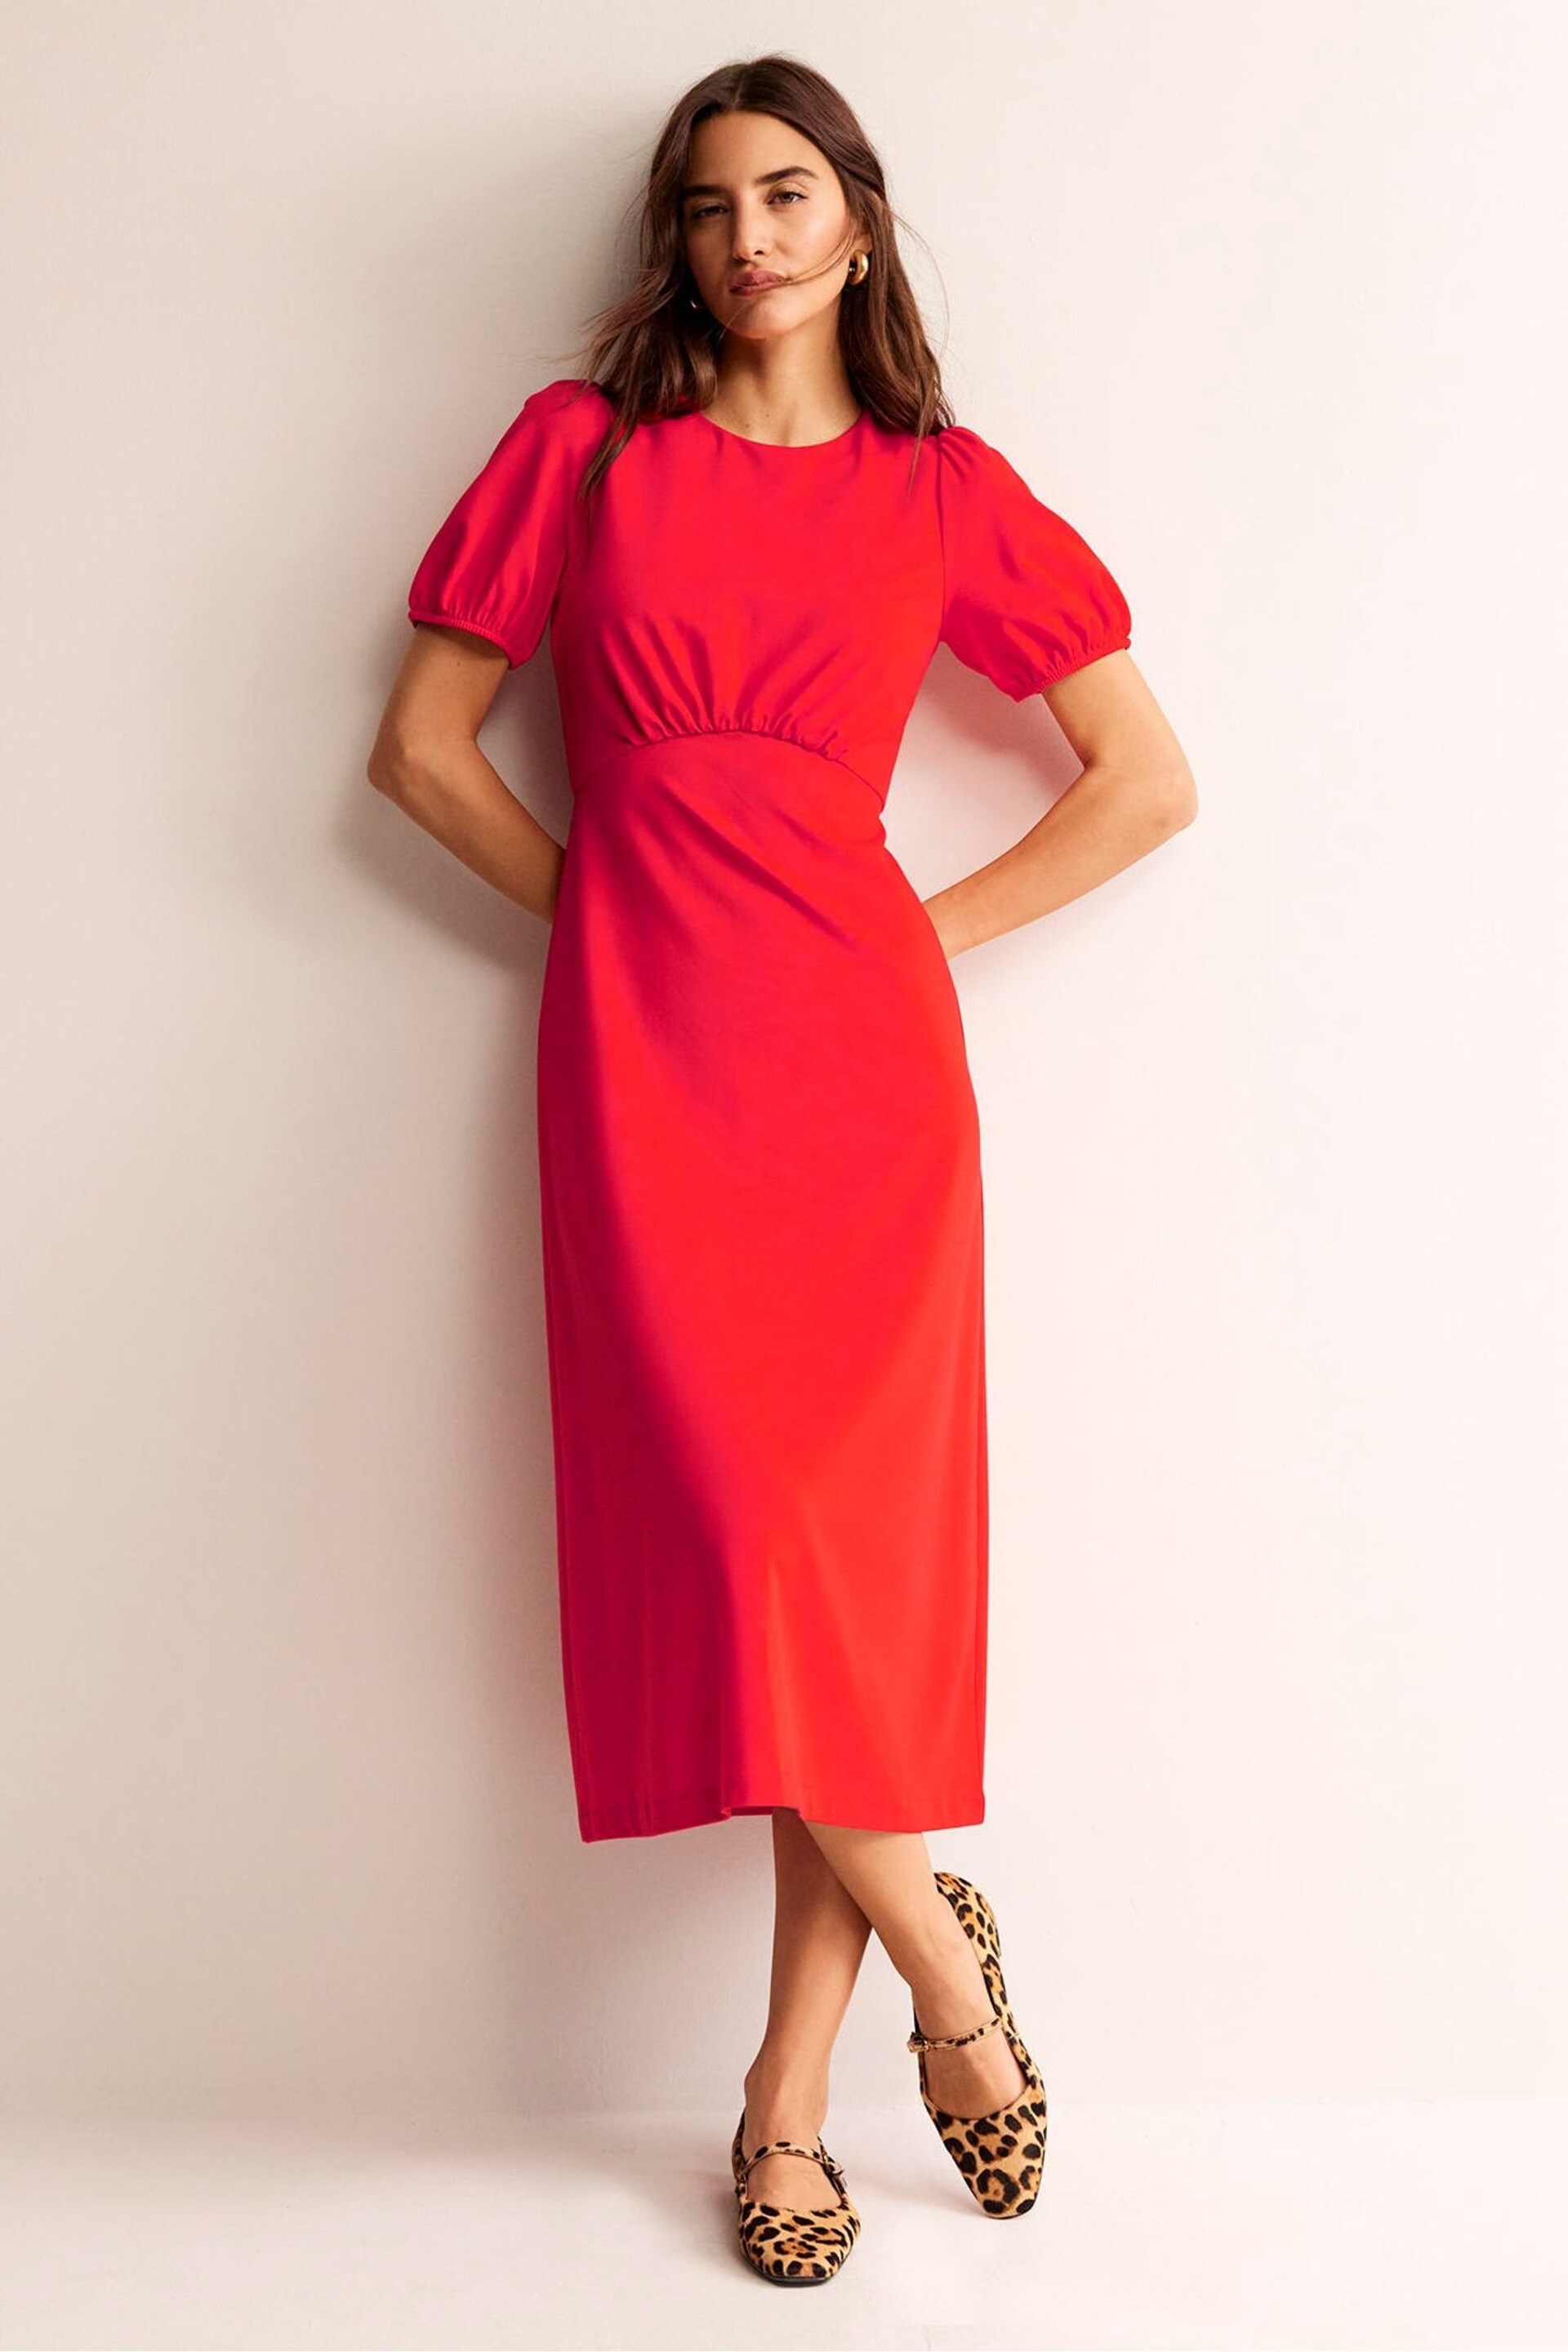 Boden Red Nancy Ponte Midi Dress - Image 1 of 5